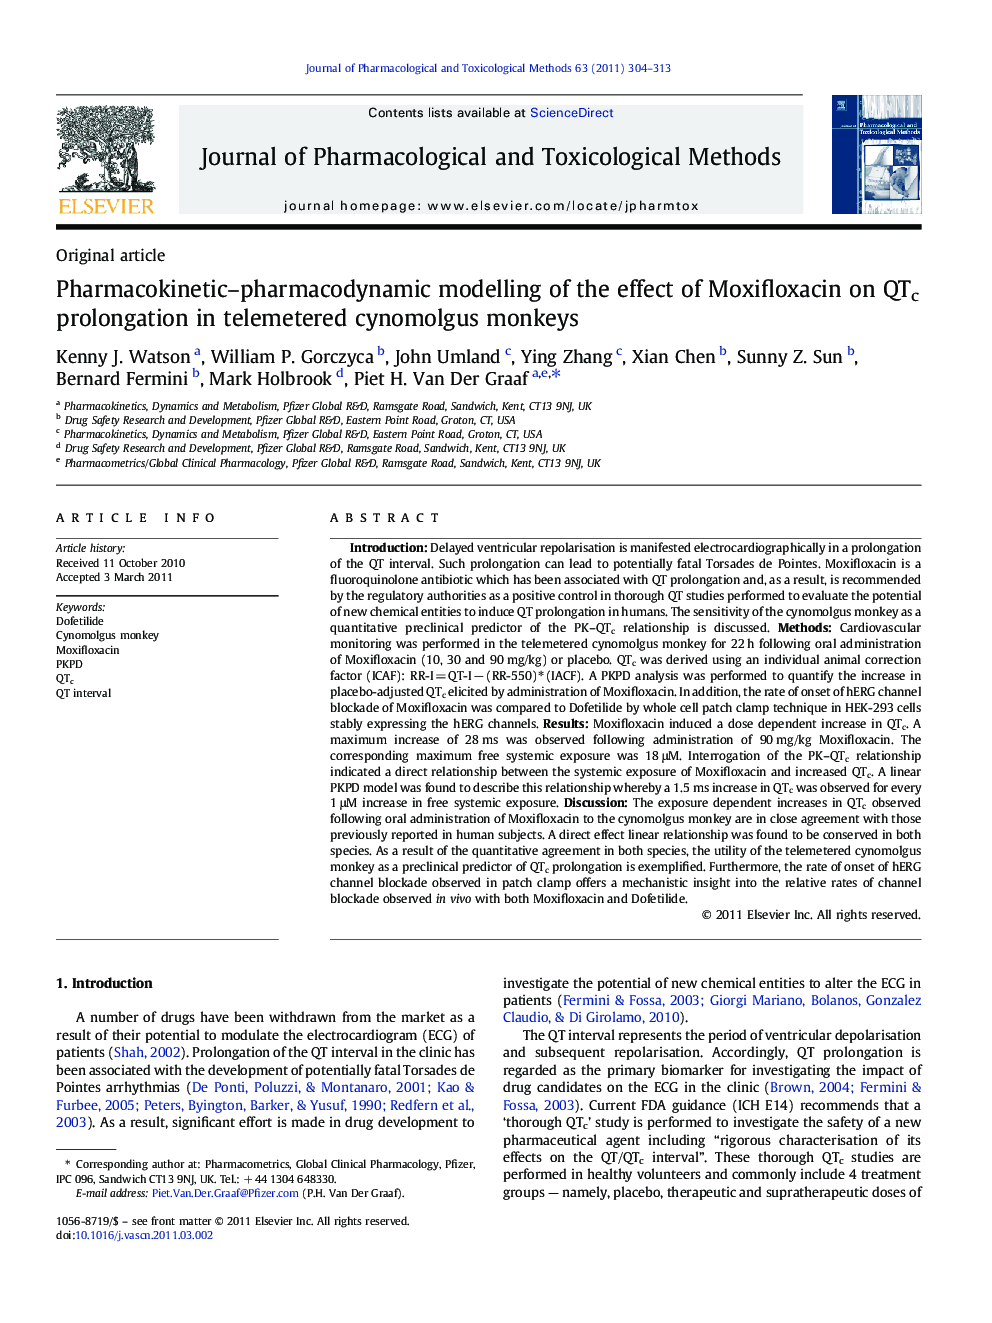 Pharmacokinetic–pharmacodynamic modelling of the effect of Moxifloxacin on QTc prolongation in telemetered cynomolgus monkeys